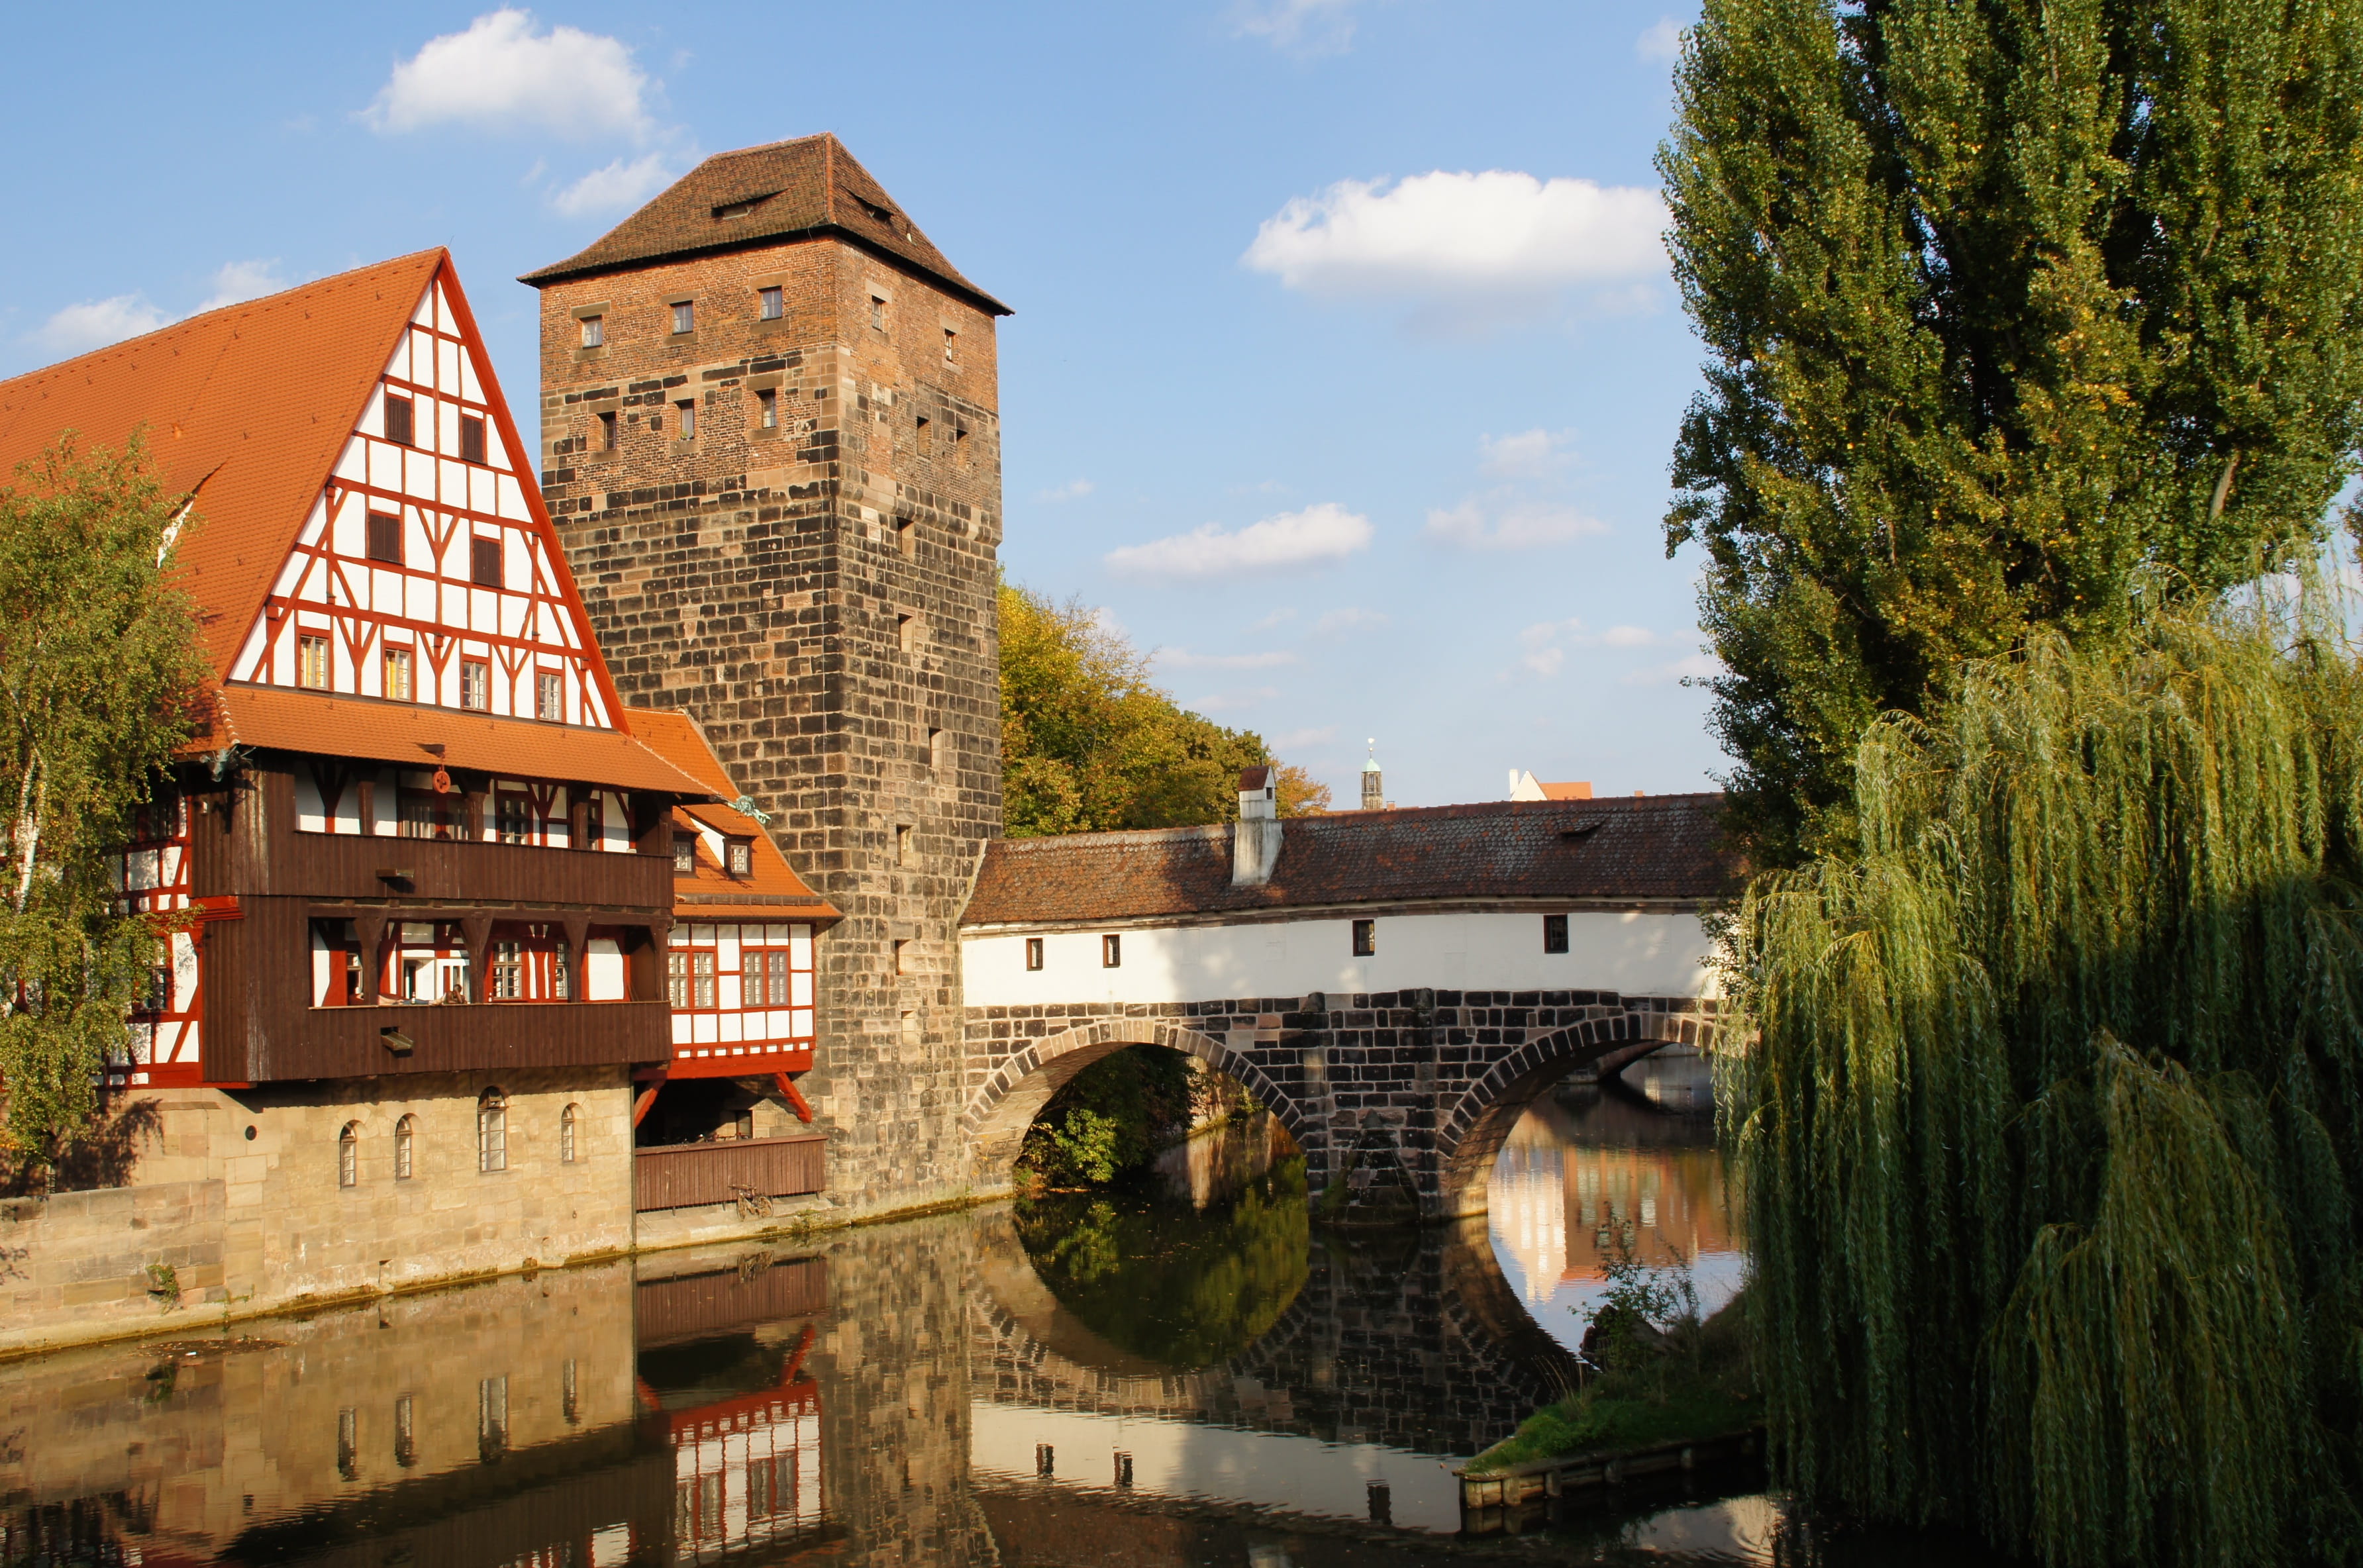 Nuremberg, Pegnitz, Mensa, Old Town, old mensa, building, autumn